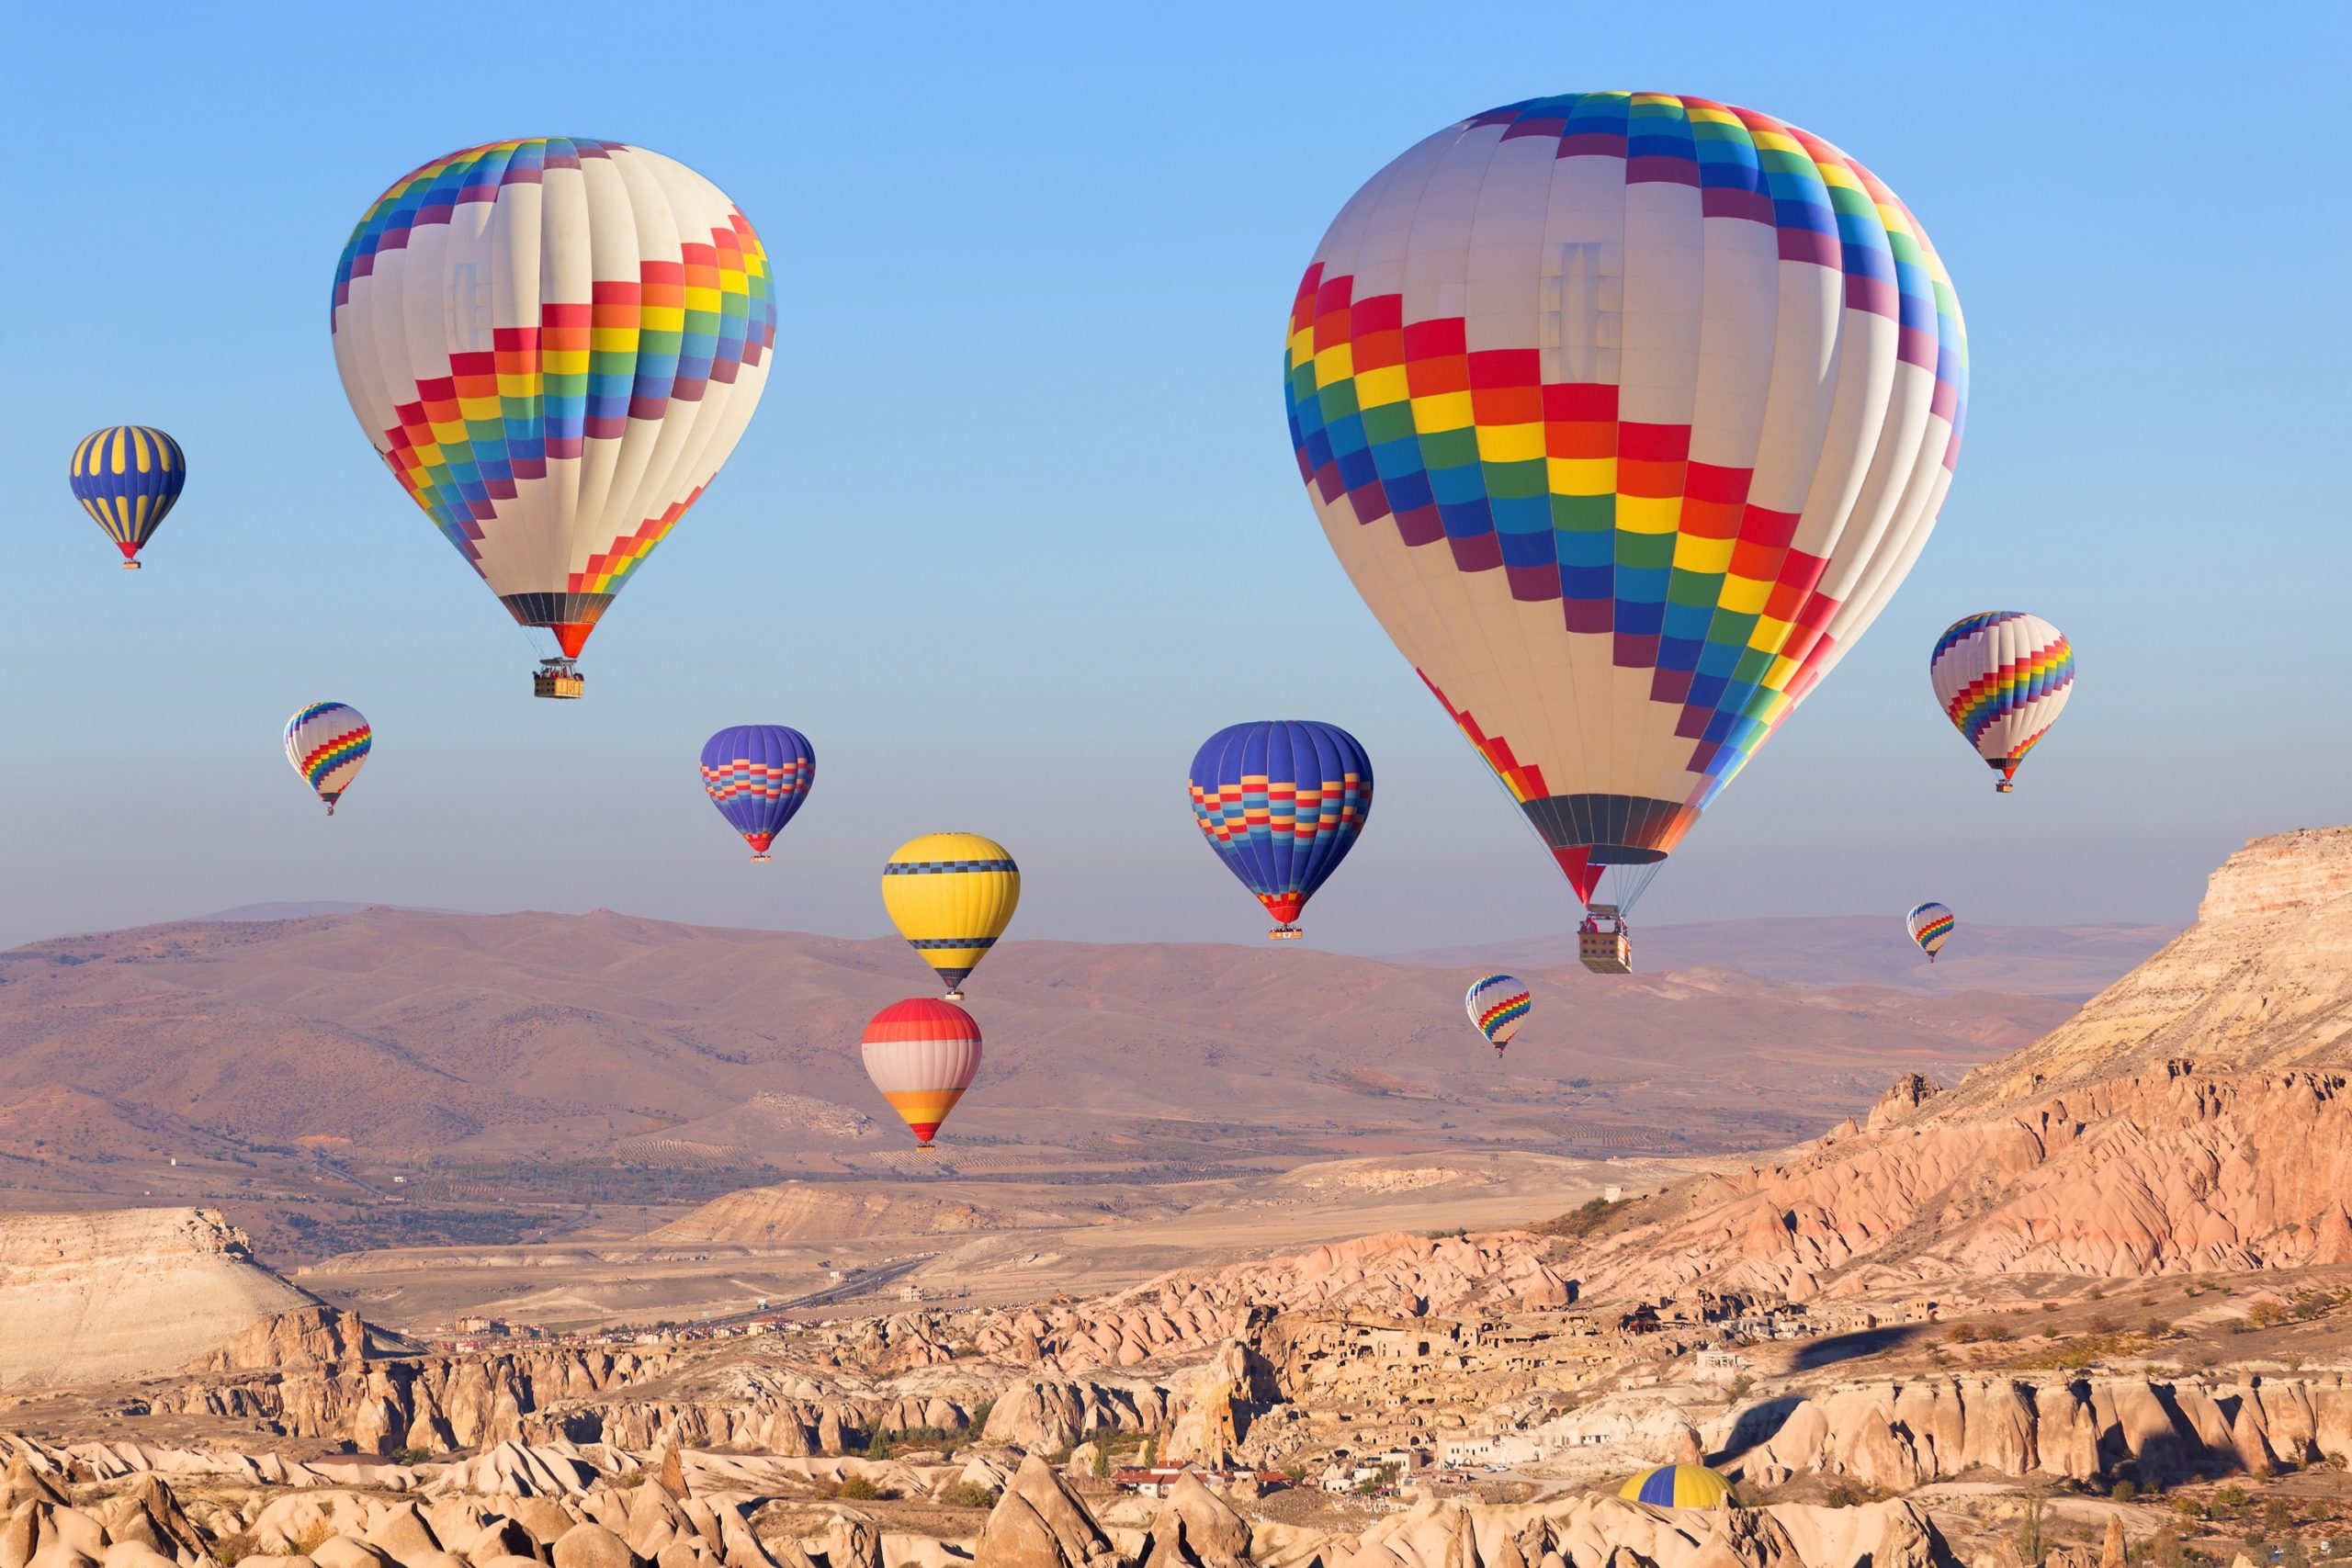 cappadocia ballon tours